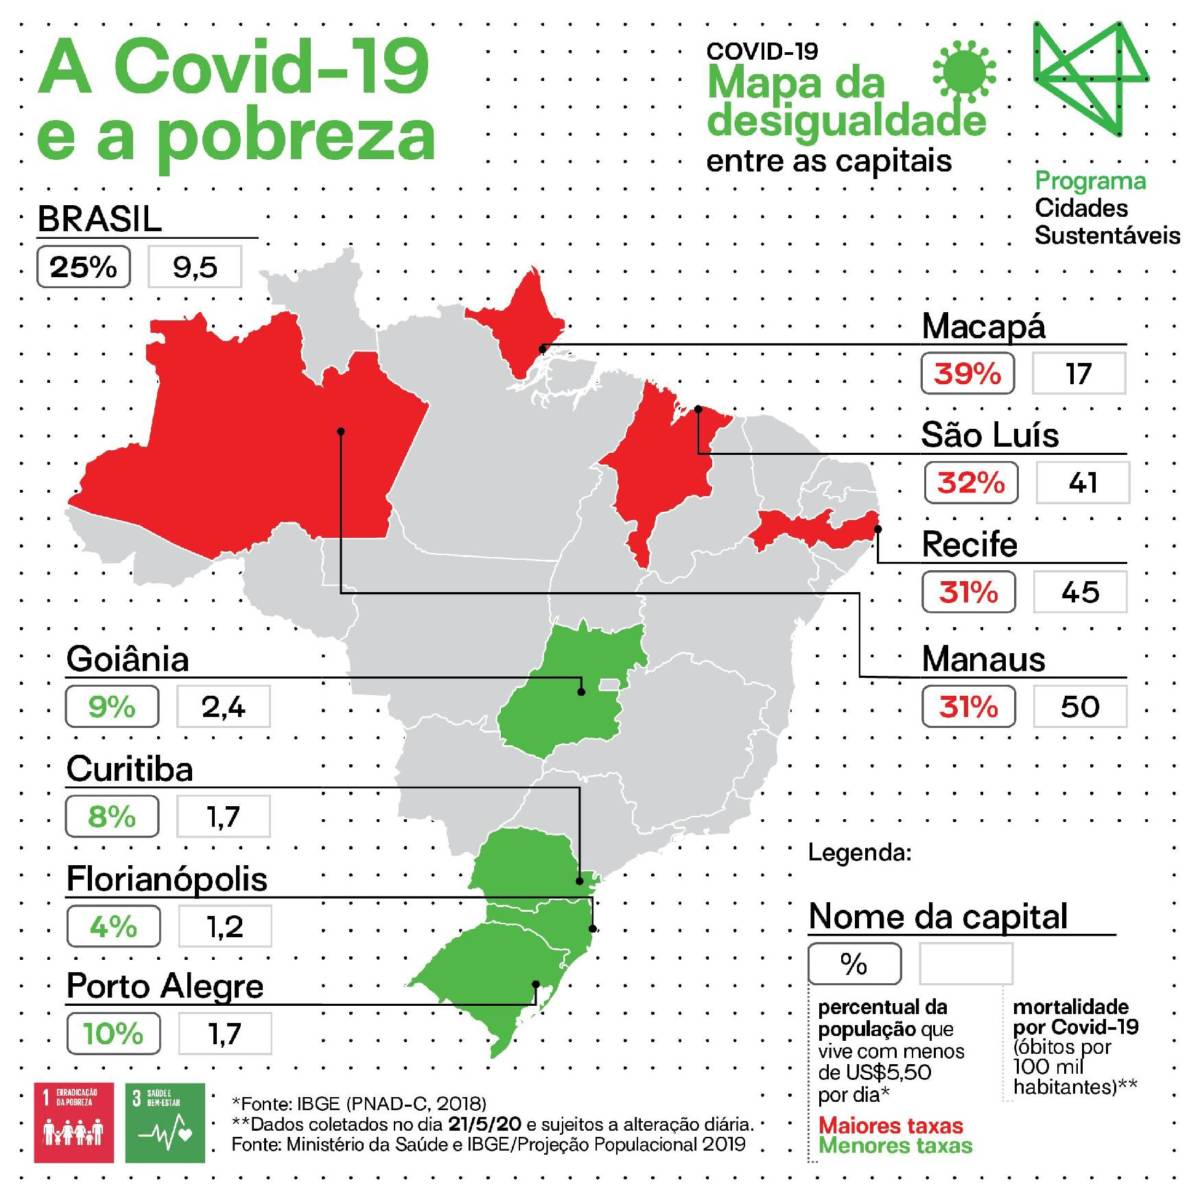 MAPA DA DESIGUALDADE: RENDA E MORTALIDADE POR COVID-19 NAS CAPITAIS BRASILEIRAS